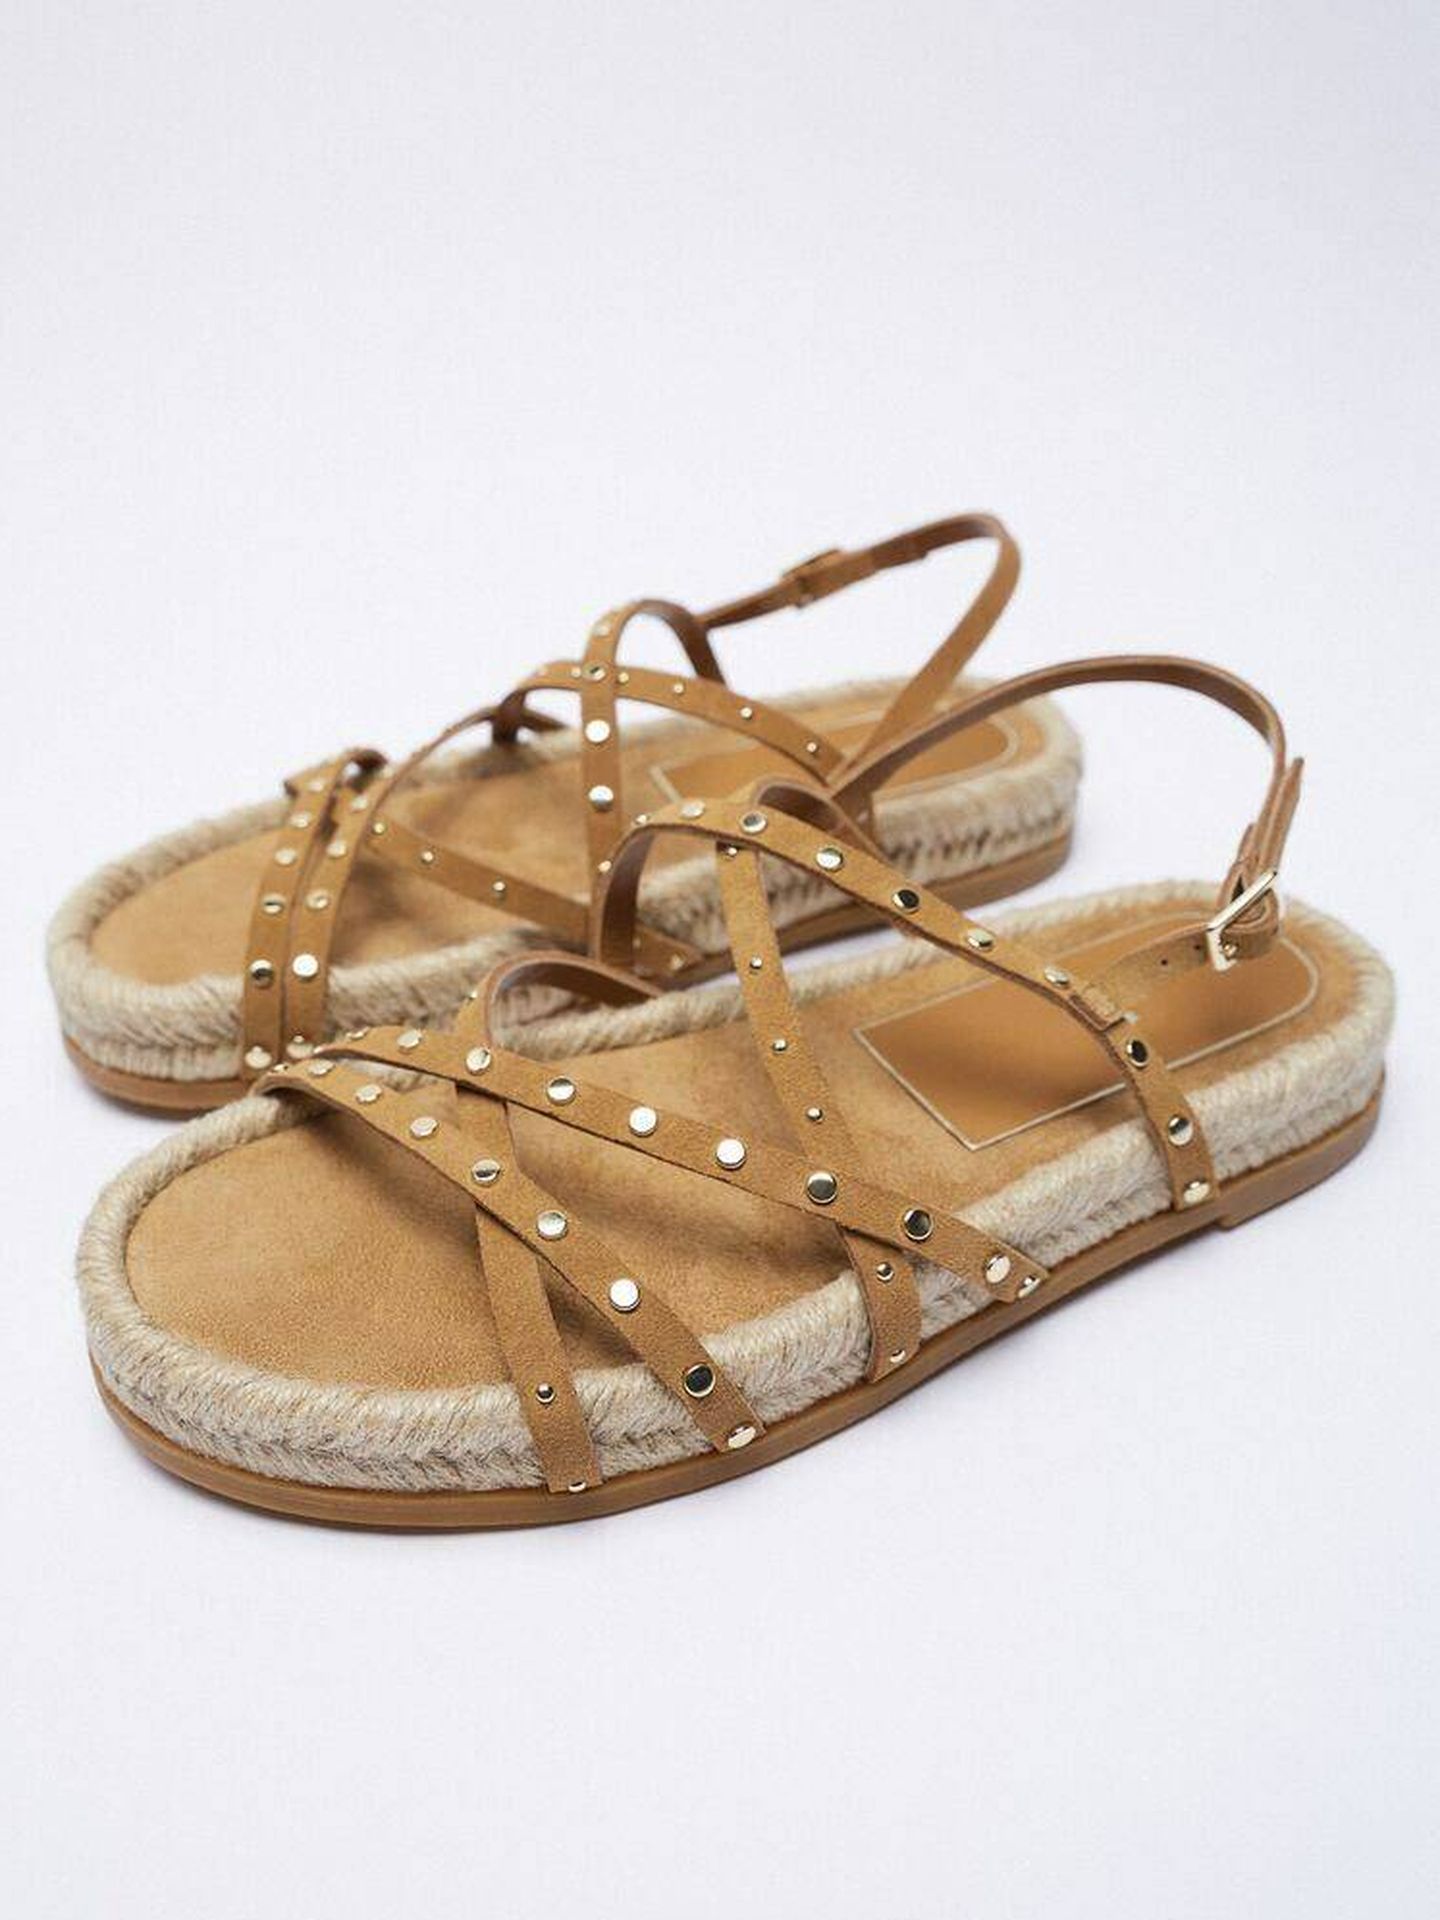 Sandalias planas de Zara ideales para pies anchos. (Cortesía)